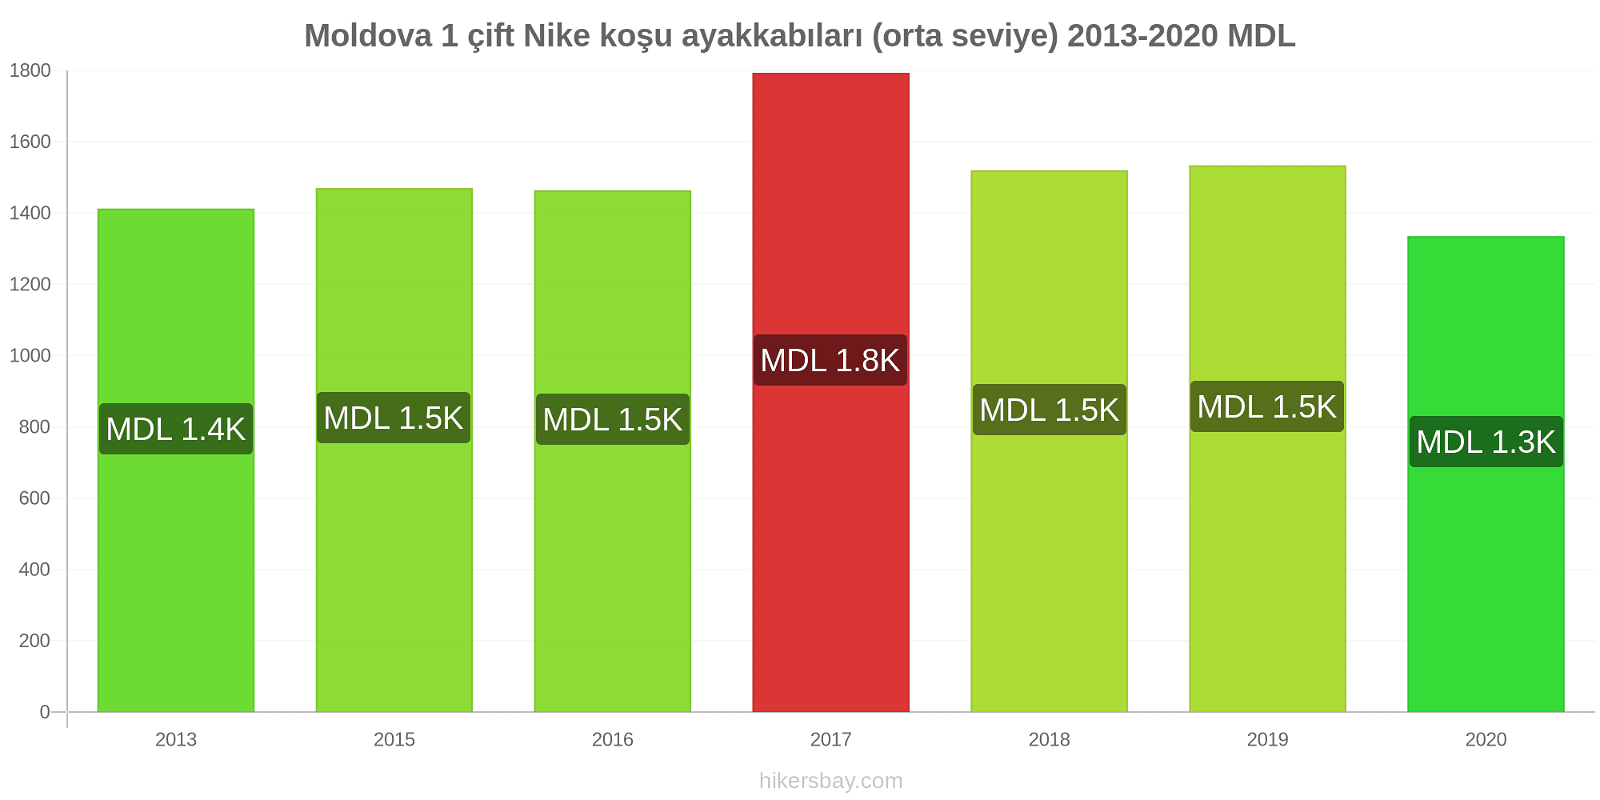 Moldova fiyat değişiklikleri 1 çift Nike koşu ayakkabıları (orta seviye) hikersbay.com